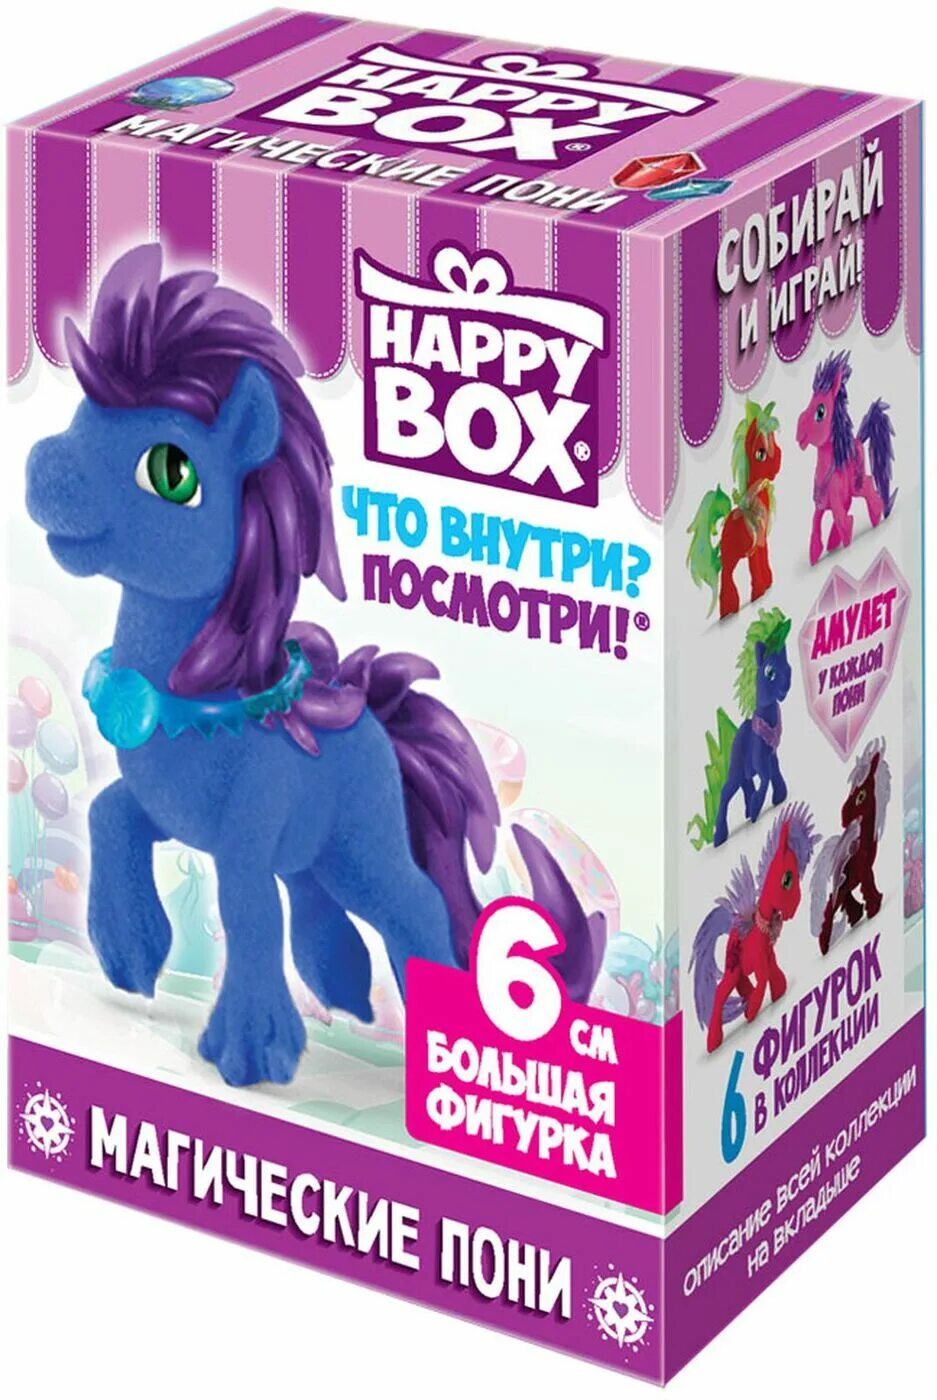 Be happy box. Карамель Happy Box поняшки. Хэппи бокс магические пони. Happy Box магические пони. Карамель Happy Box лошадки 18г.